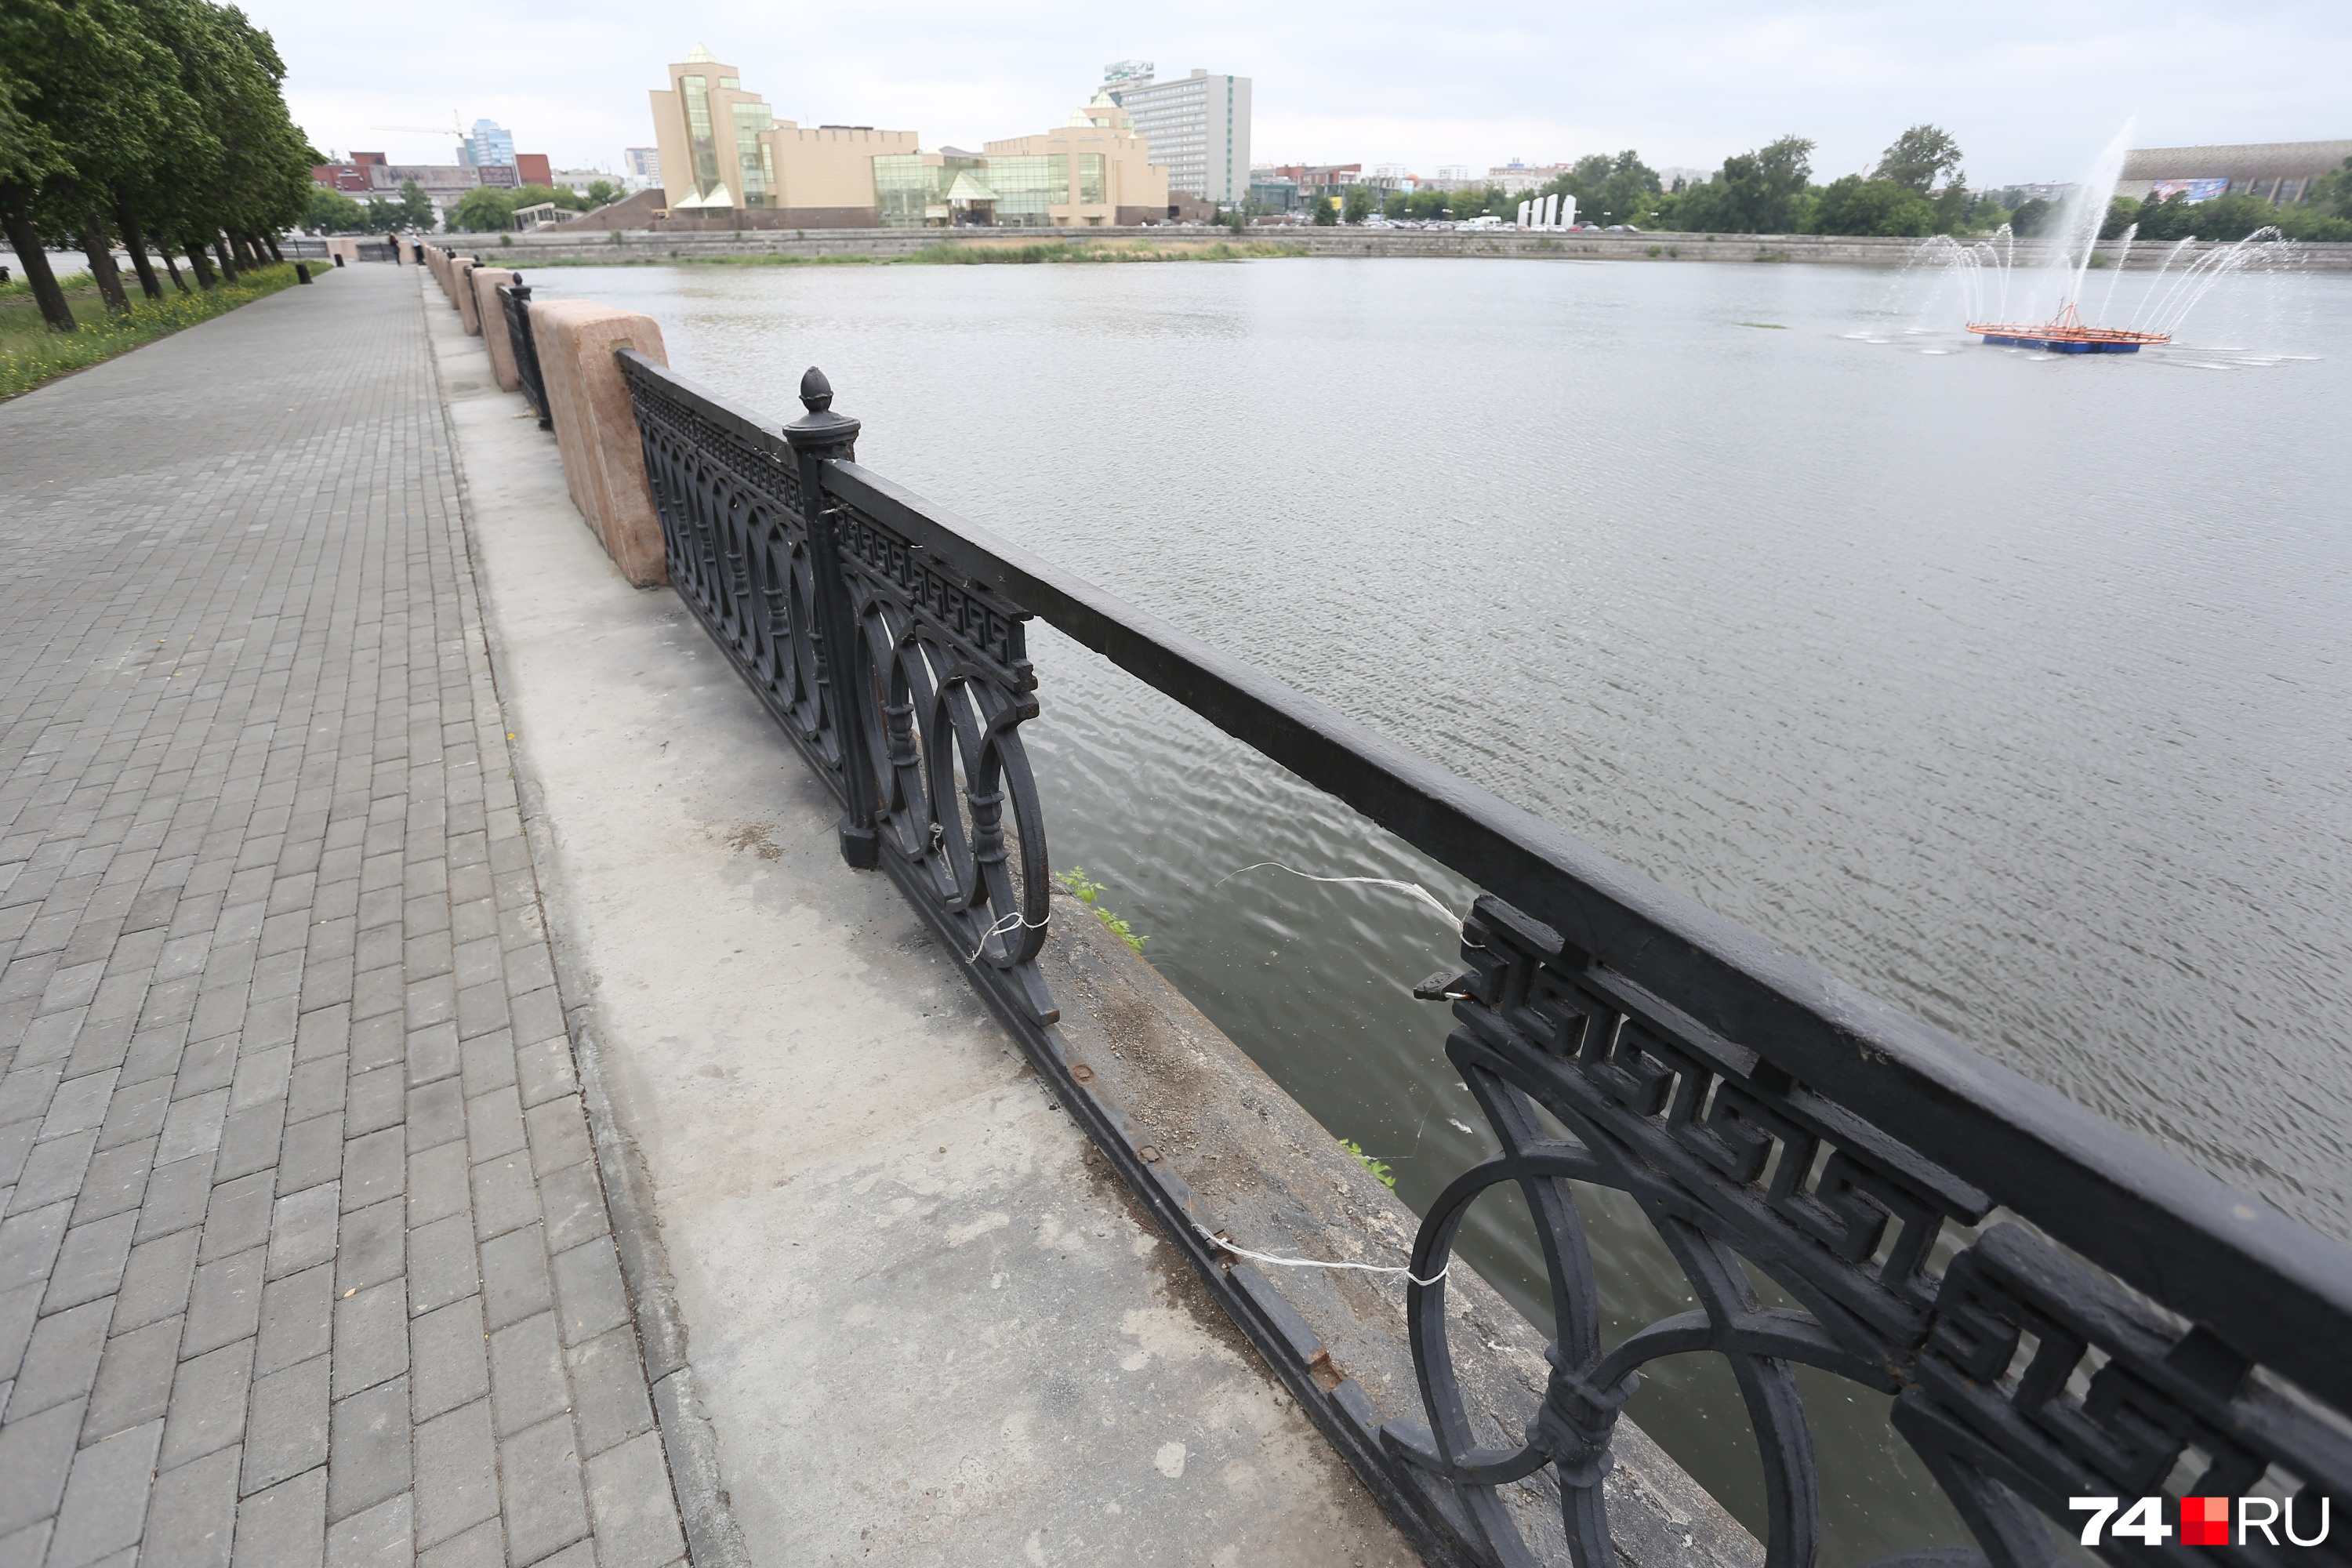 Заявили, что за ремонт этого пролёта мостовой ограды не отвечают: администрации Челябинска и Калининского района, управление дорожного хозяйства, КУИЗО и «Южуралмост»